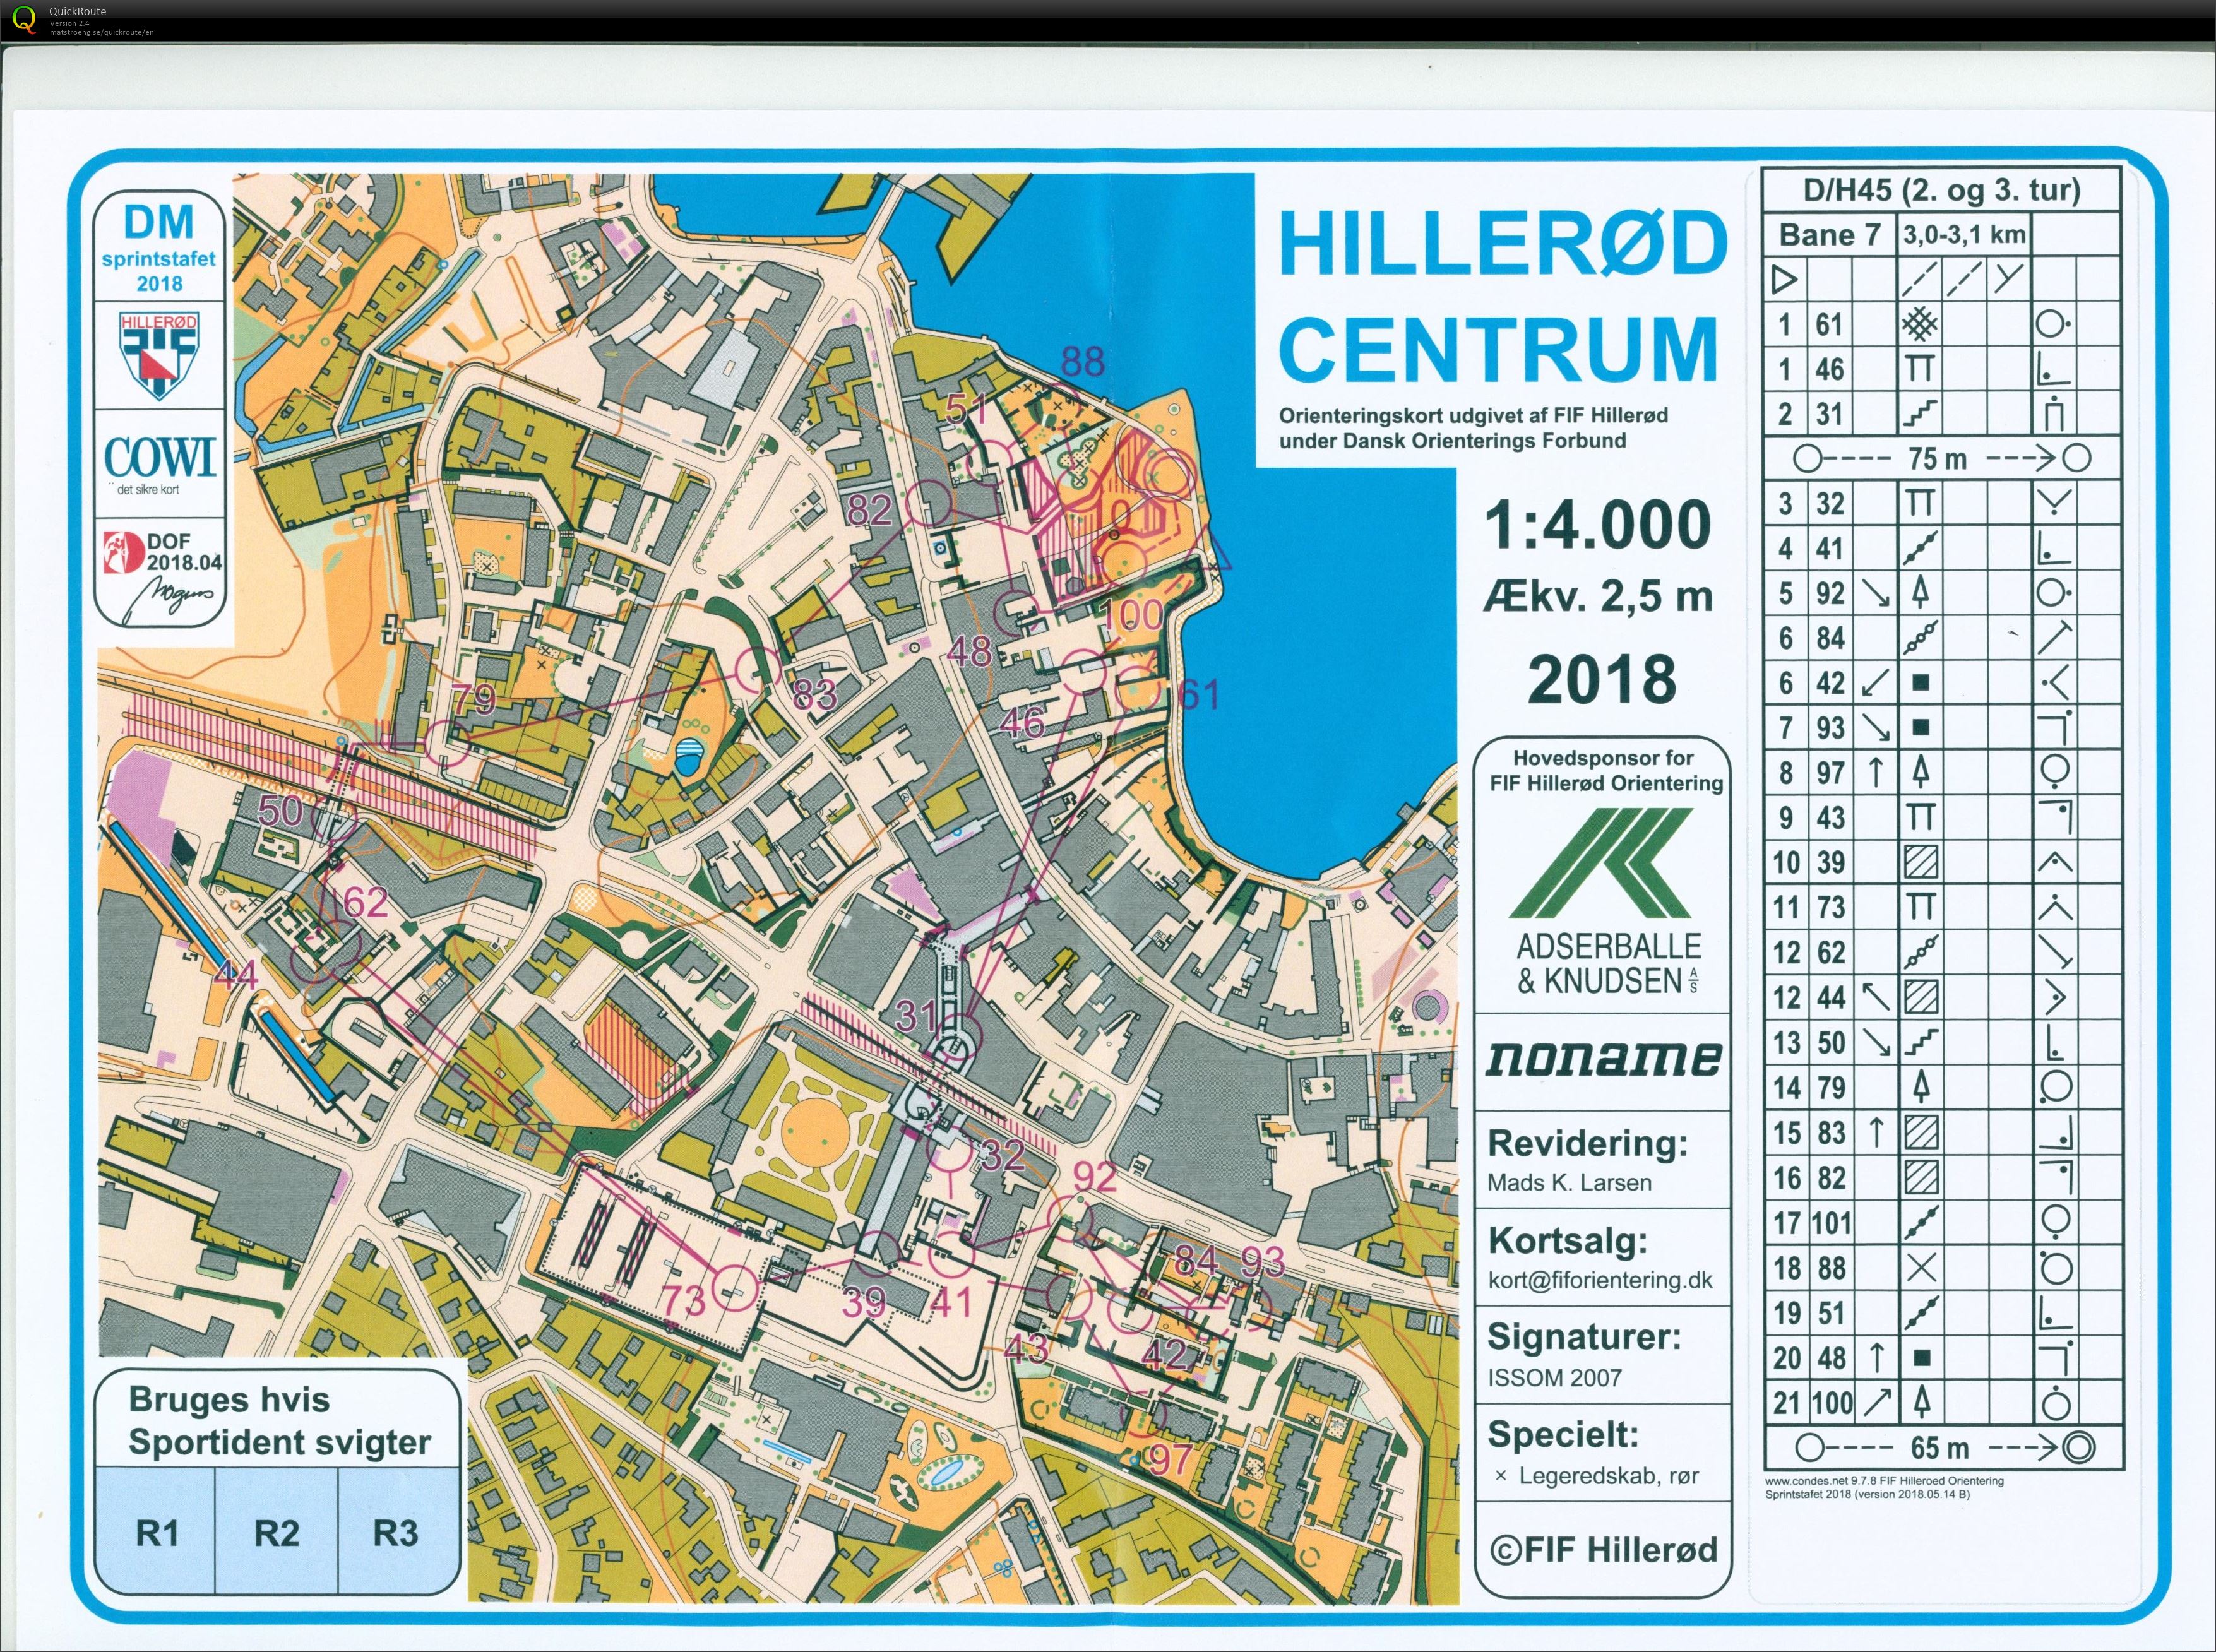 Hillerød sprint stafet D/H45 (27.05.2018)